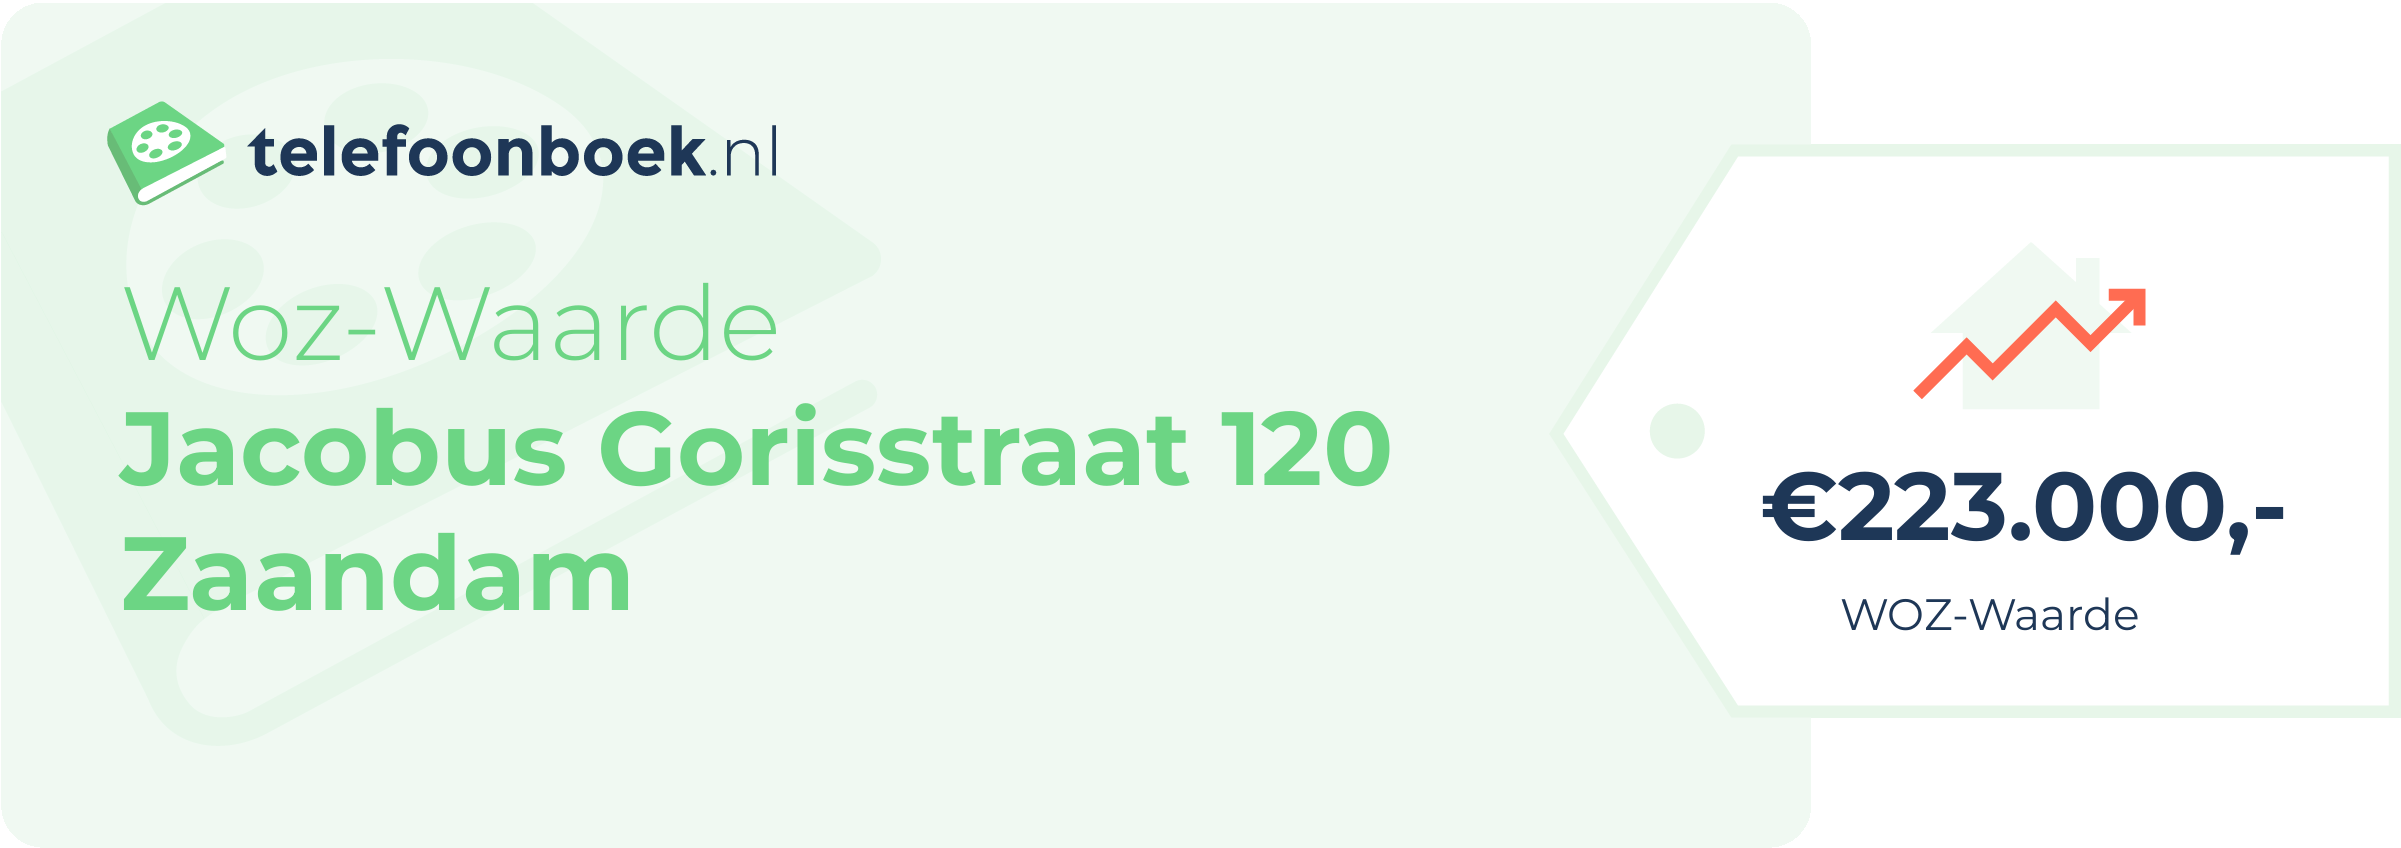 WOZ-waarde Jacobus Gorisstraat 120 Zaandam